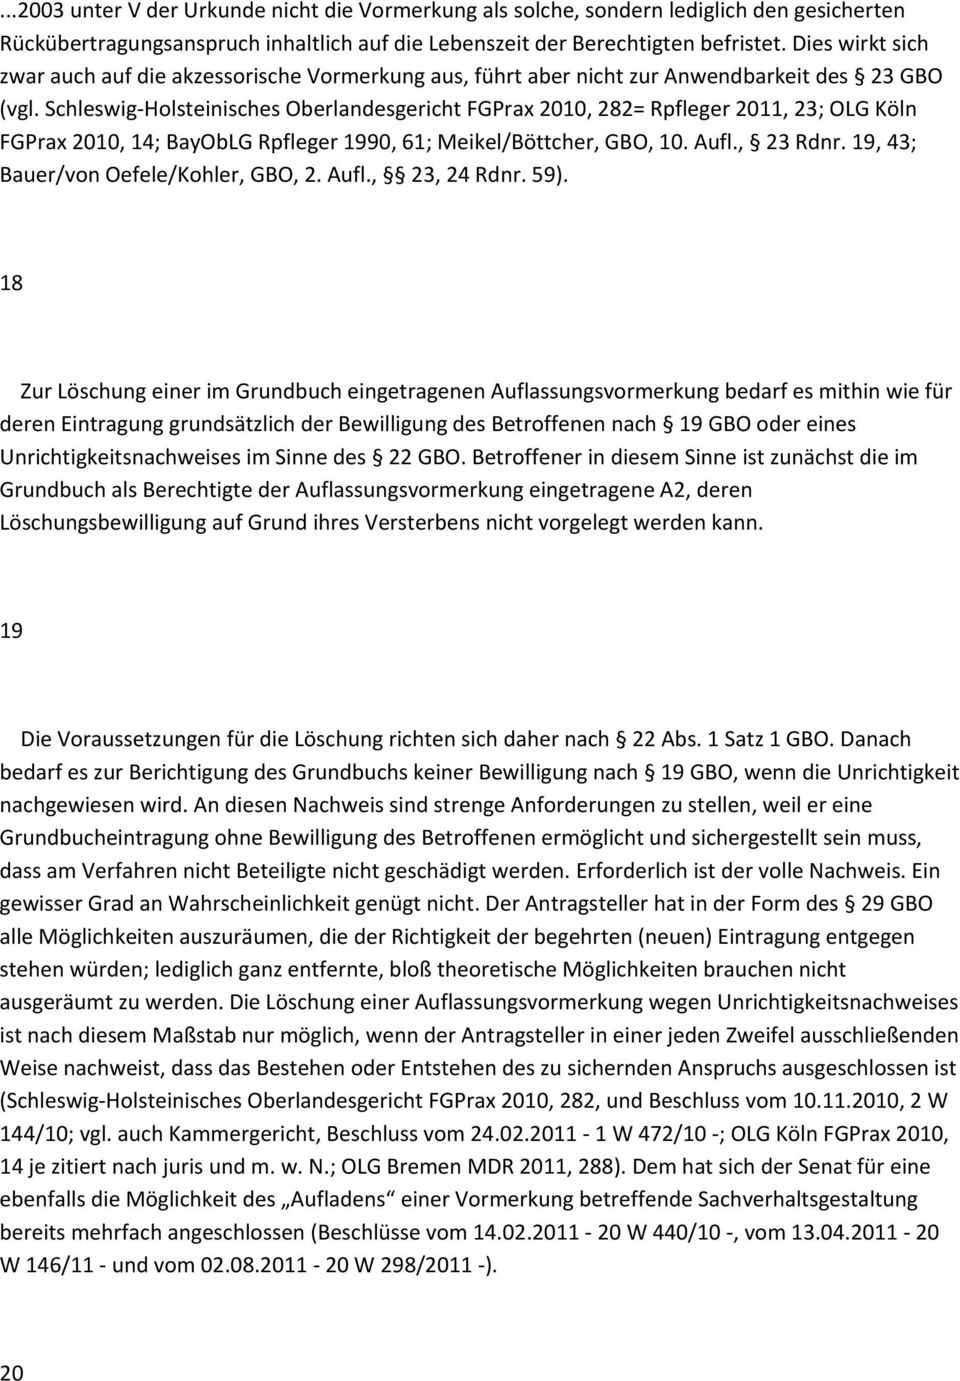 Schleswig Holsteinisches Oberlandesgericht FGPrax 2010, 282= Rpfleger 2011, 23; OLG Köln FGPrax 2010, 14; BayObLG Rpfleger 1990, 61; Meikel/Böttcher, GBO, 10. Aufl., 23 Rdnr.